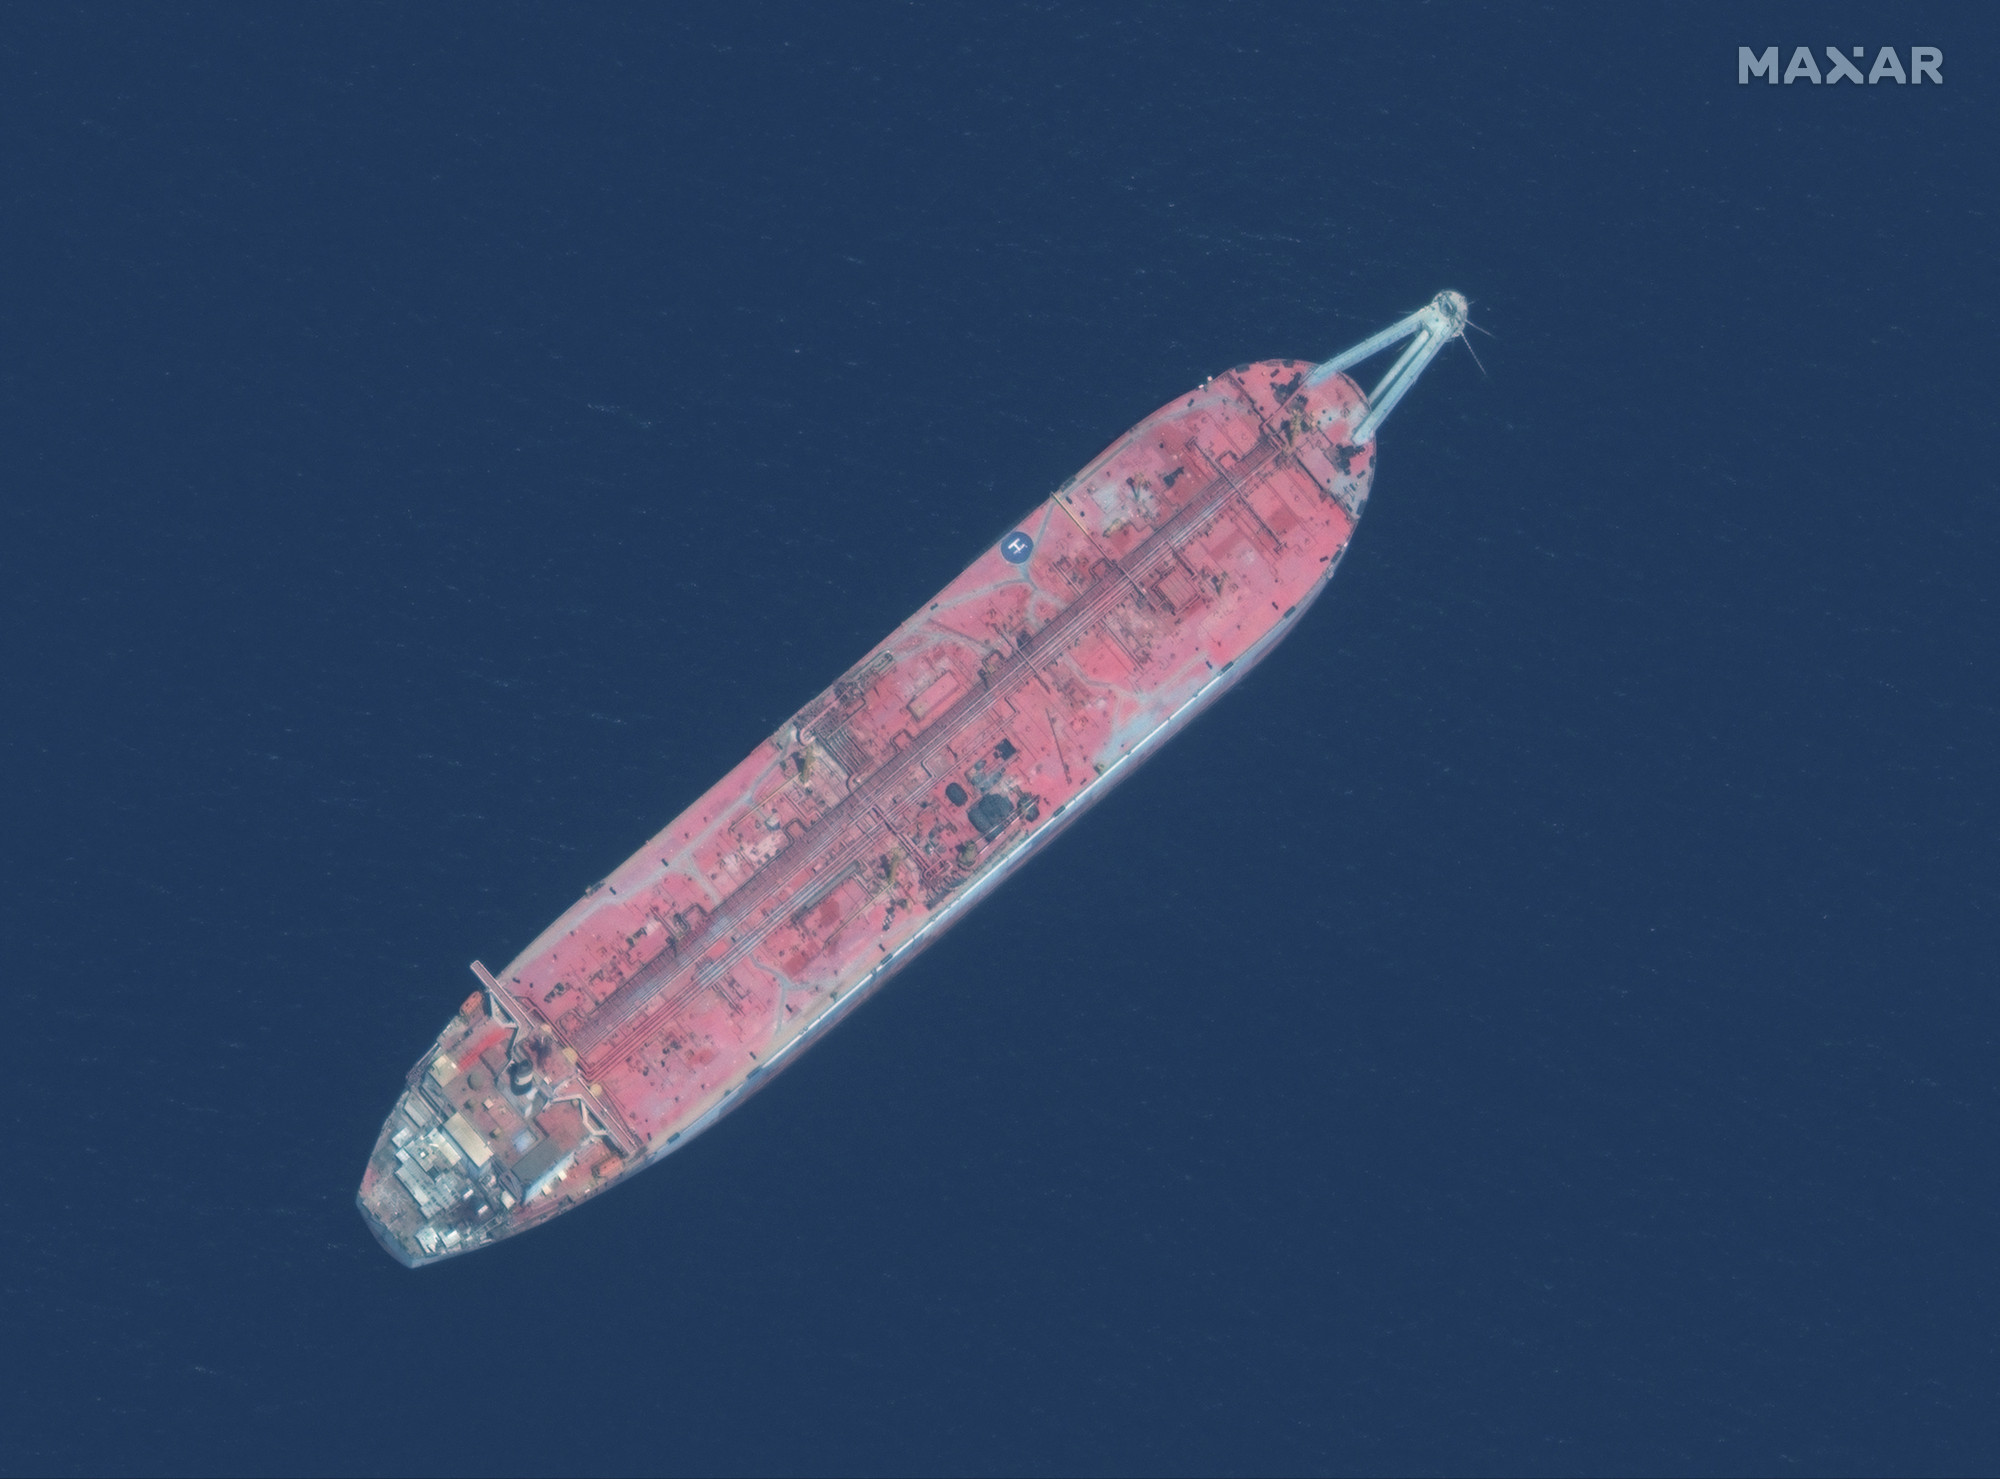 Bármikor széteshet egy hajó a Vörös-tengeren kétszáz millió liternyi nyersolajjal a fedélzetén